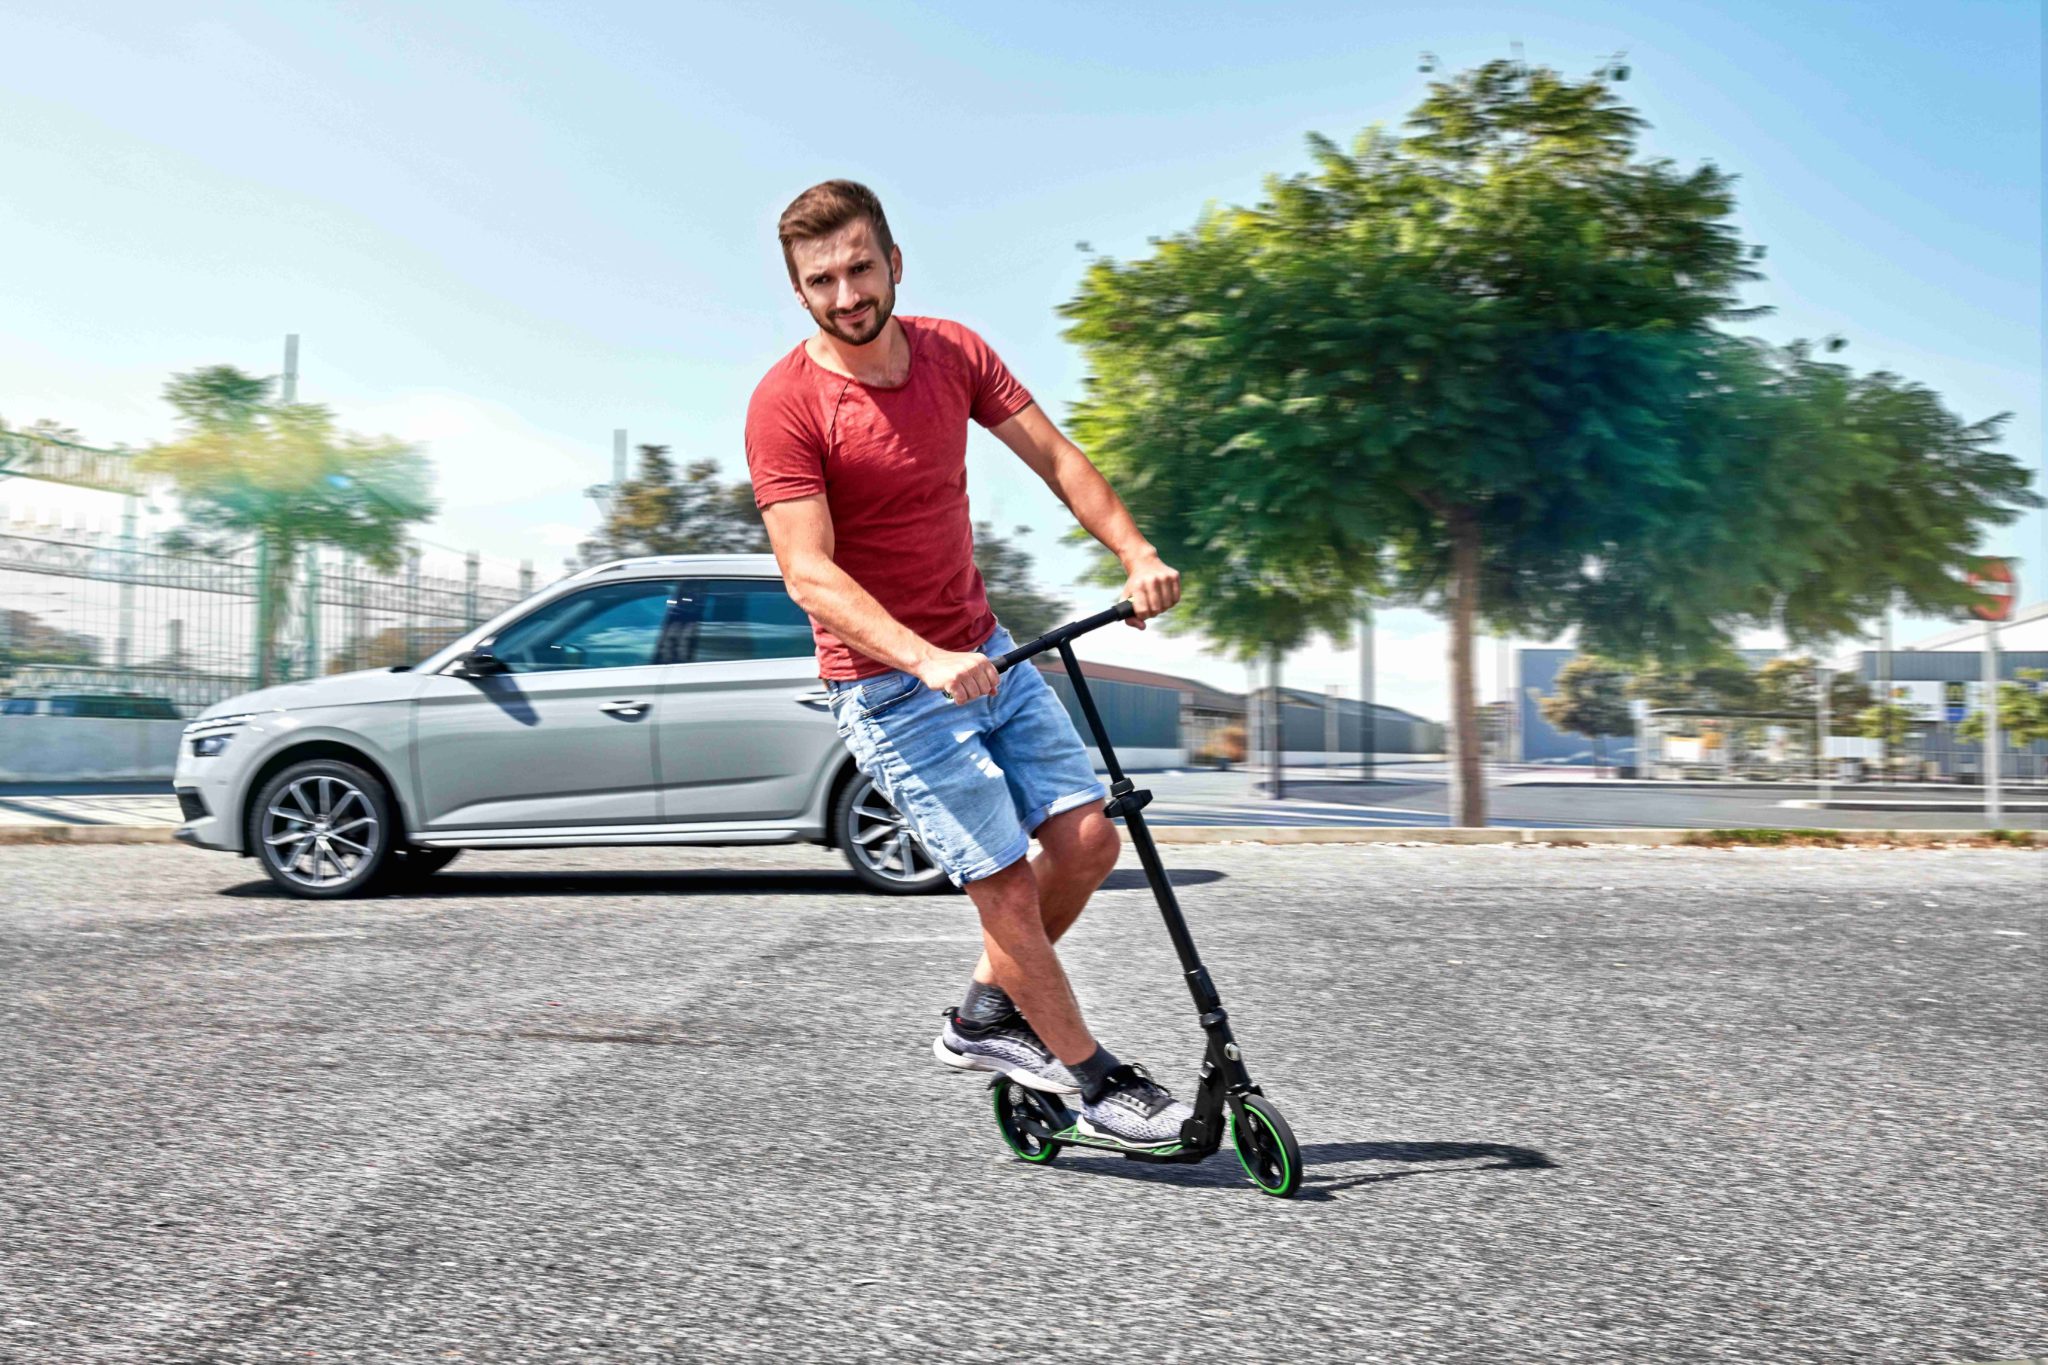 S kolobežkou ŠKODA budú vodiči vozidiel ŠKODA kedykoľvek ekologicky mobilní. Je vhodná ako dopravný prostriedok z domu na pracovisko, rovnako aj na rýchly nákup.